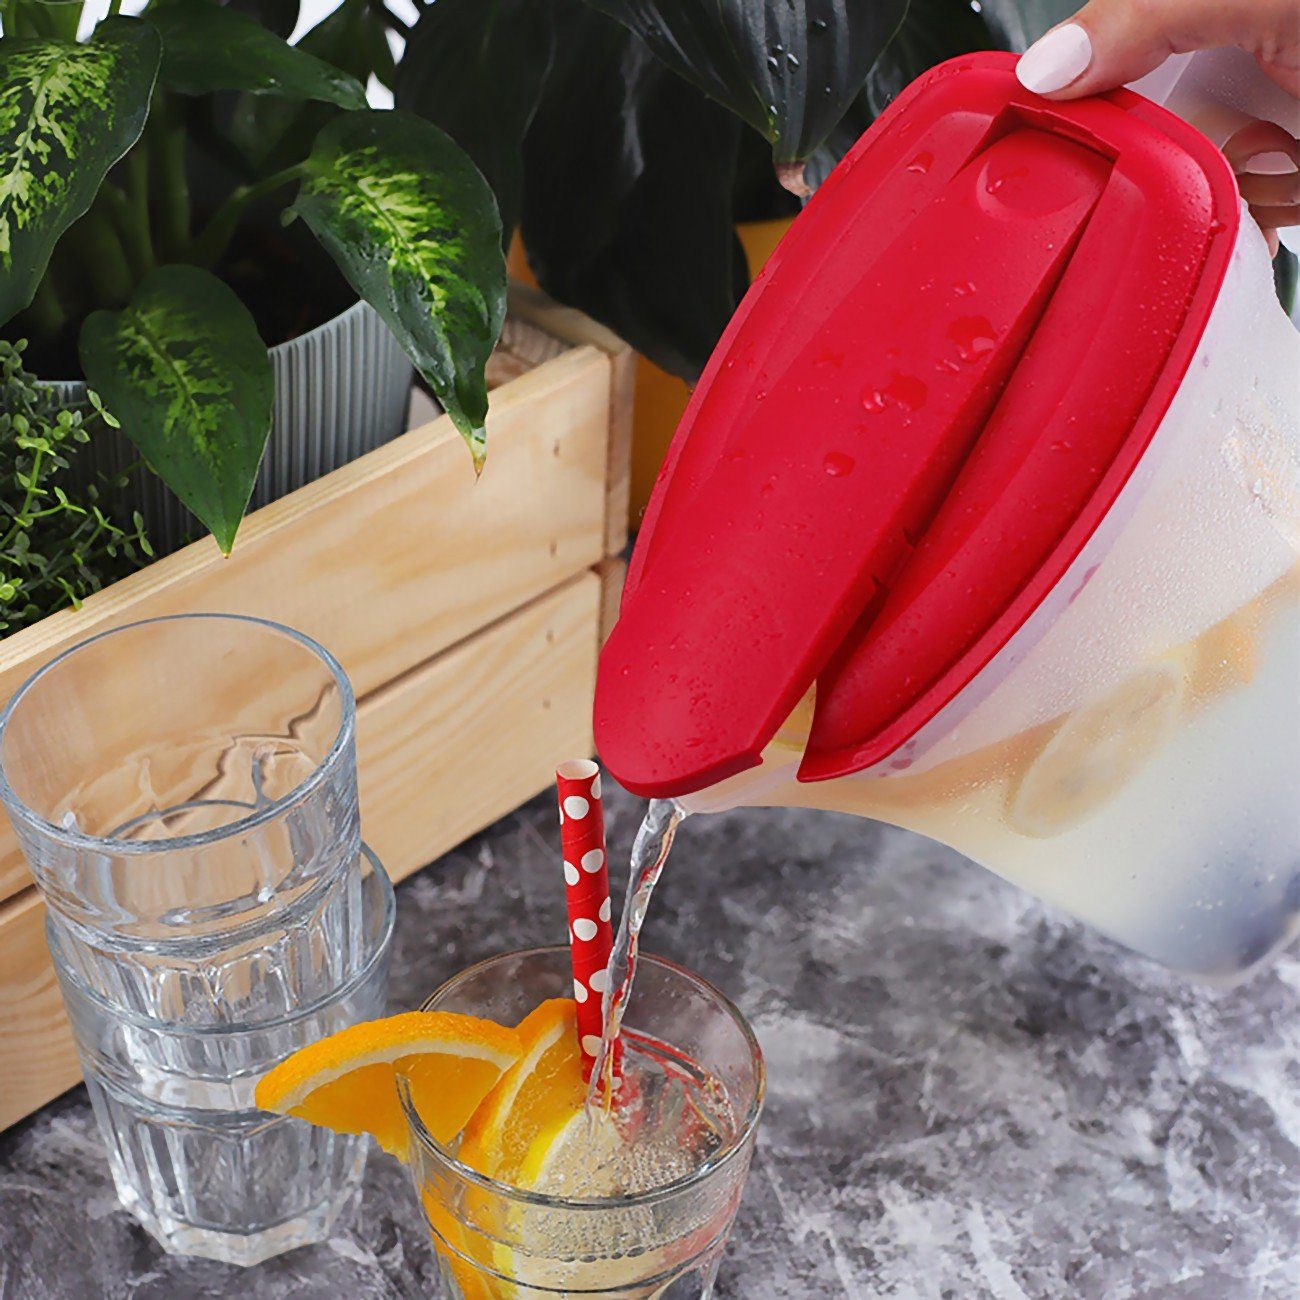 Engelland Wasserkrug Getränkekkrug mit Füllskala je 1-tlg., Kühlschrankkrug Deckel, (Vorteils-Set, Fassungsvermögen 2 BPA-frei, und Liter spülmaschinengeeignet, frostbeständig, Transparent-Weiß abnehmbarem Krug)